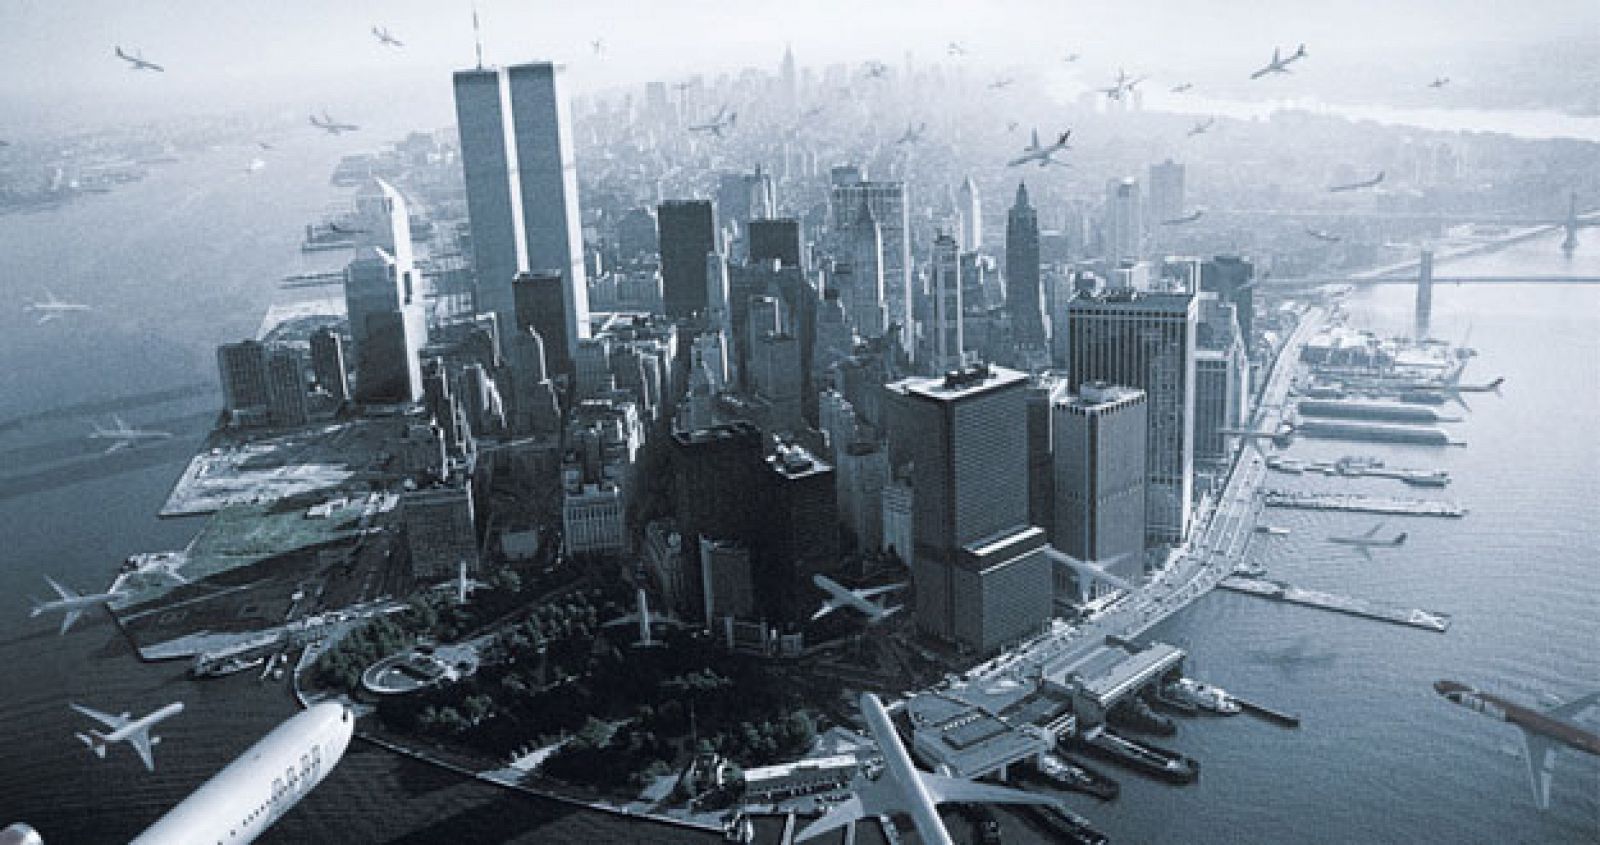 El polémico anuncio que muestra como decenas de aviones atacan el sur de Manhattan